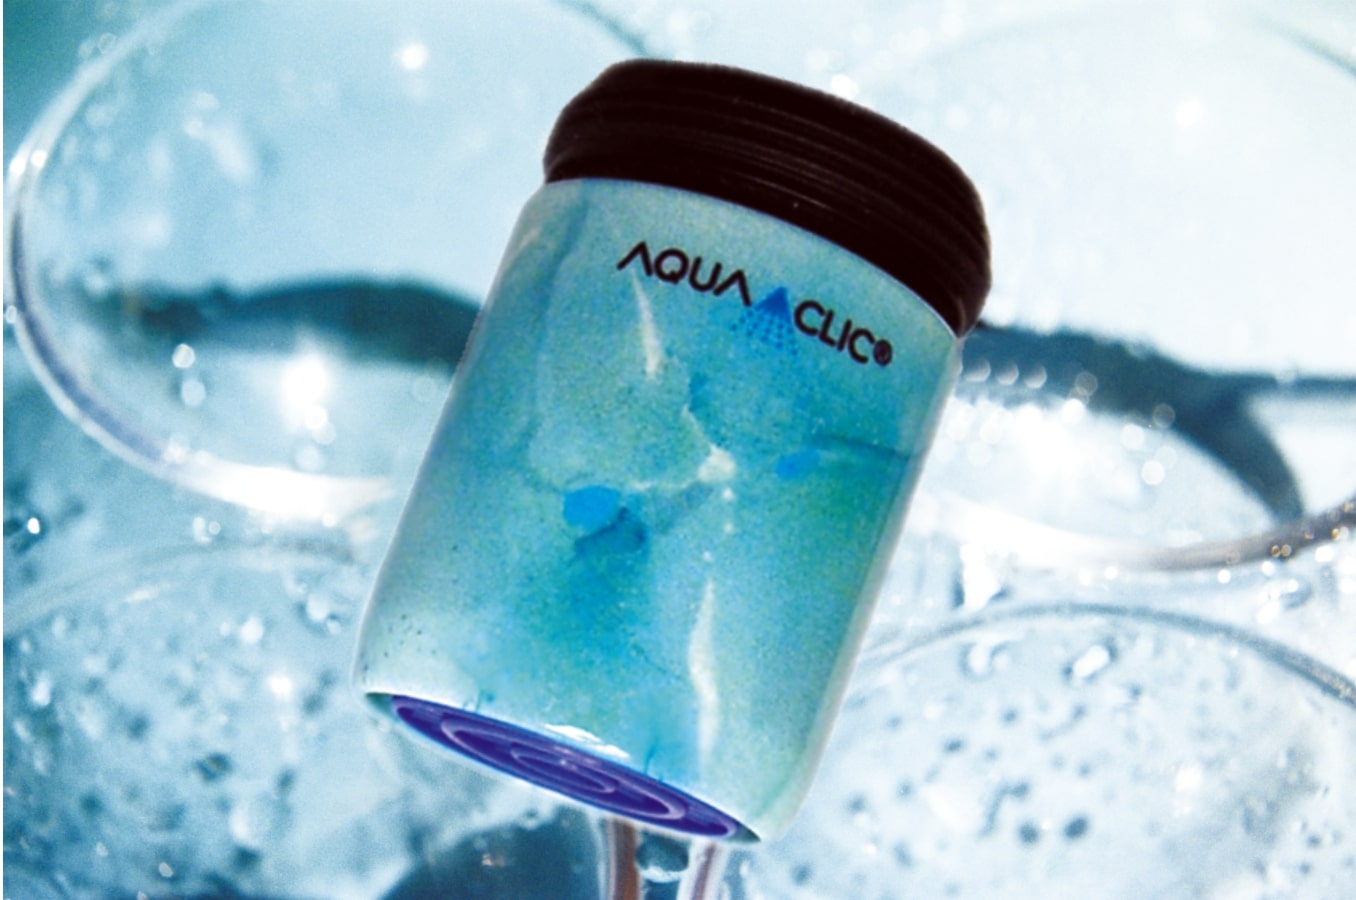 AquaClic® Jade